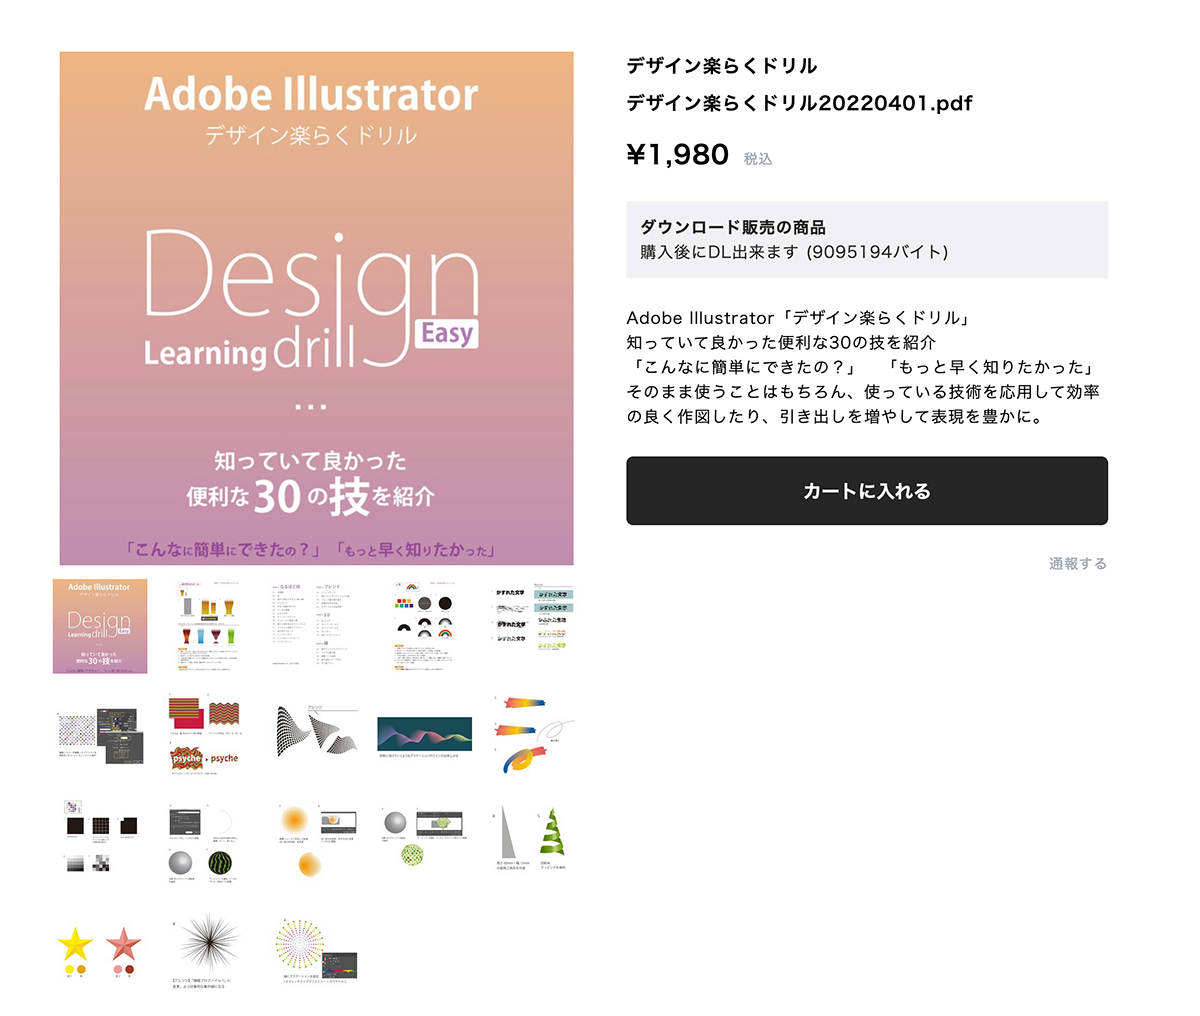 Adobeイラストレーター の使い方をマスター「デザイン楽らくドリル」